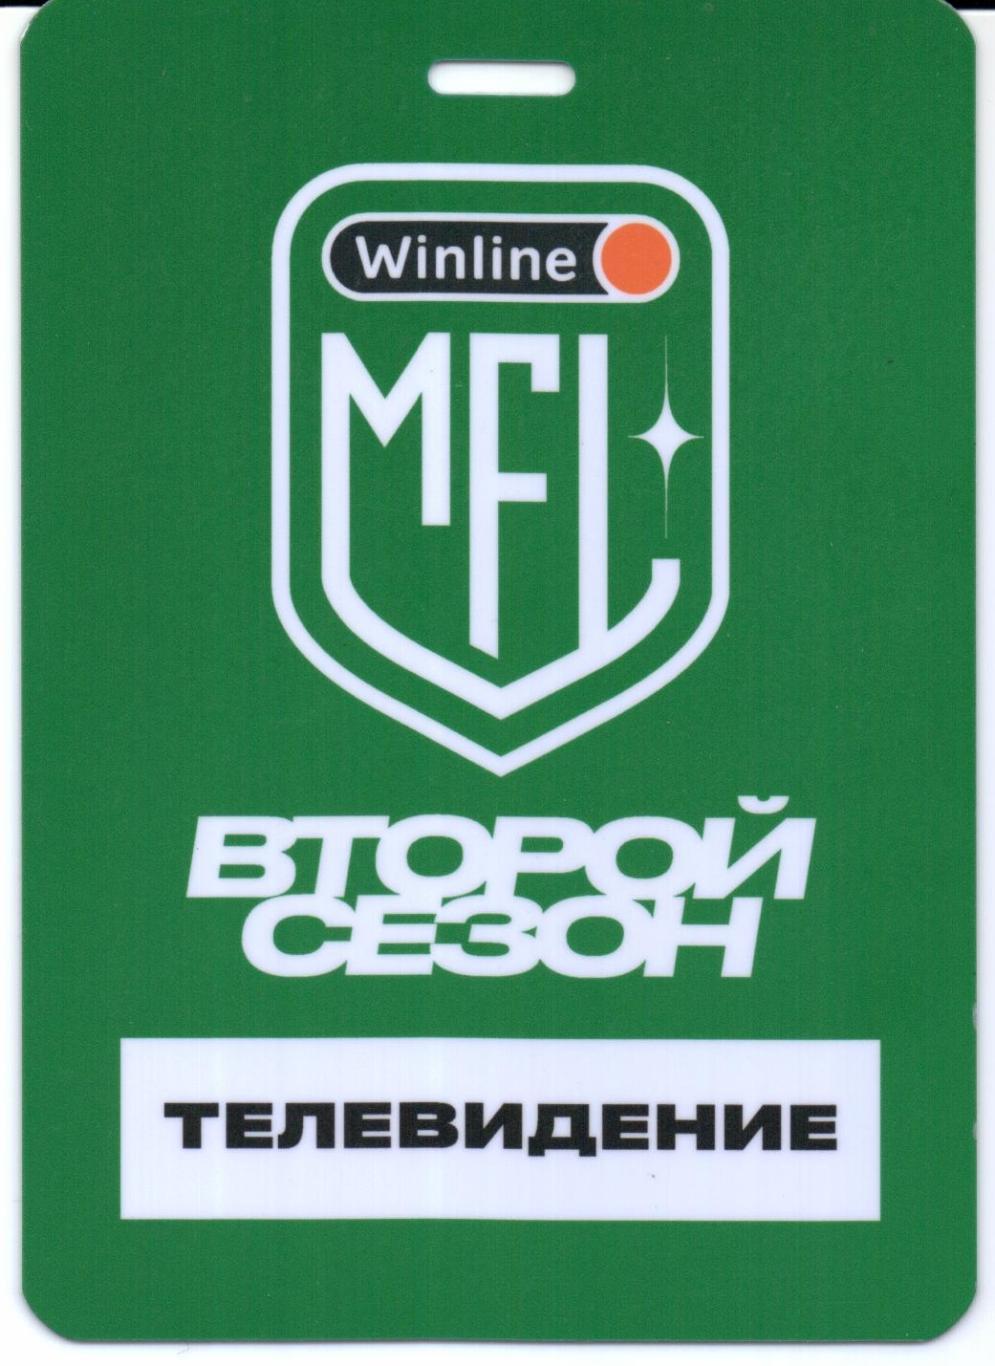 Медиалига Winline MFL второй сезон